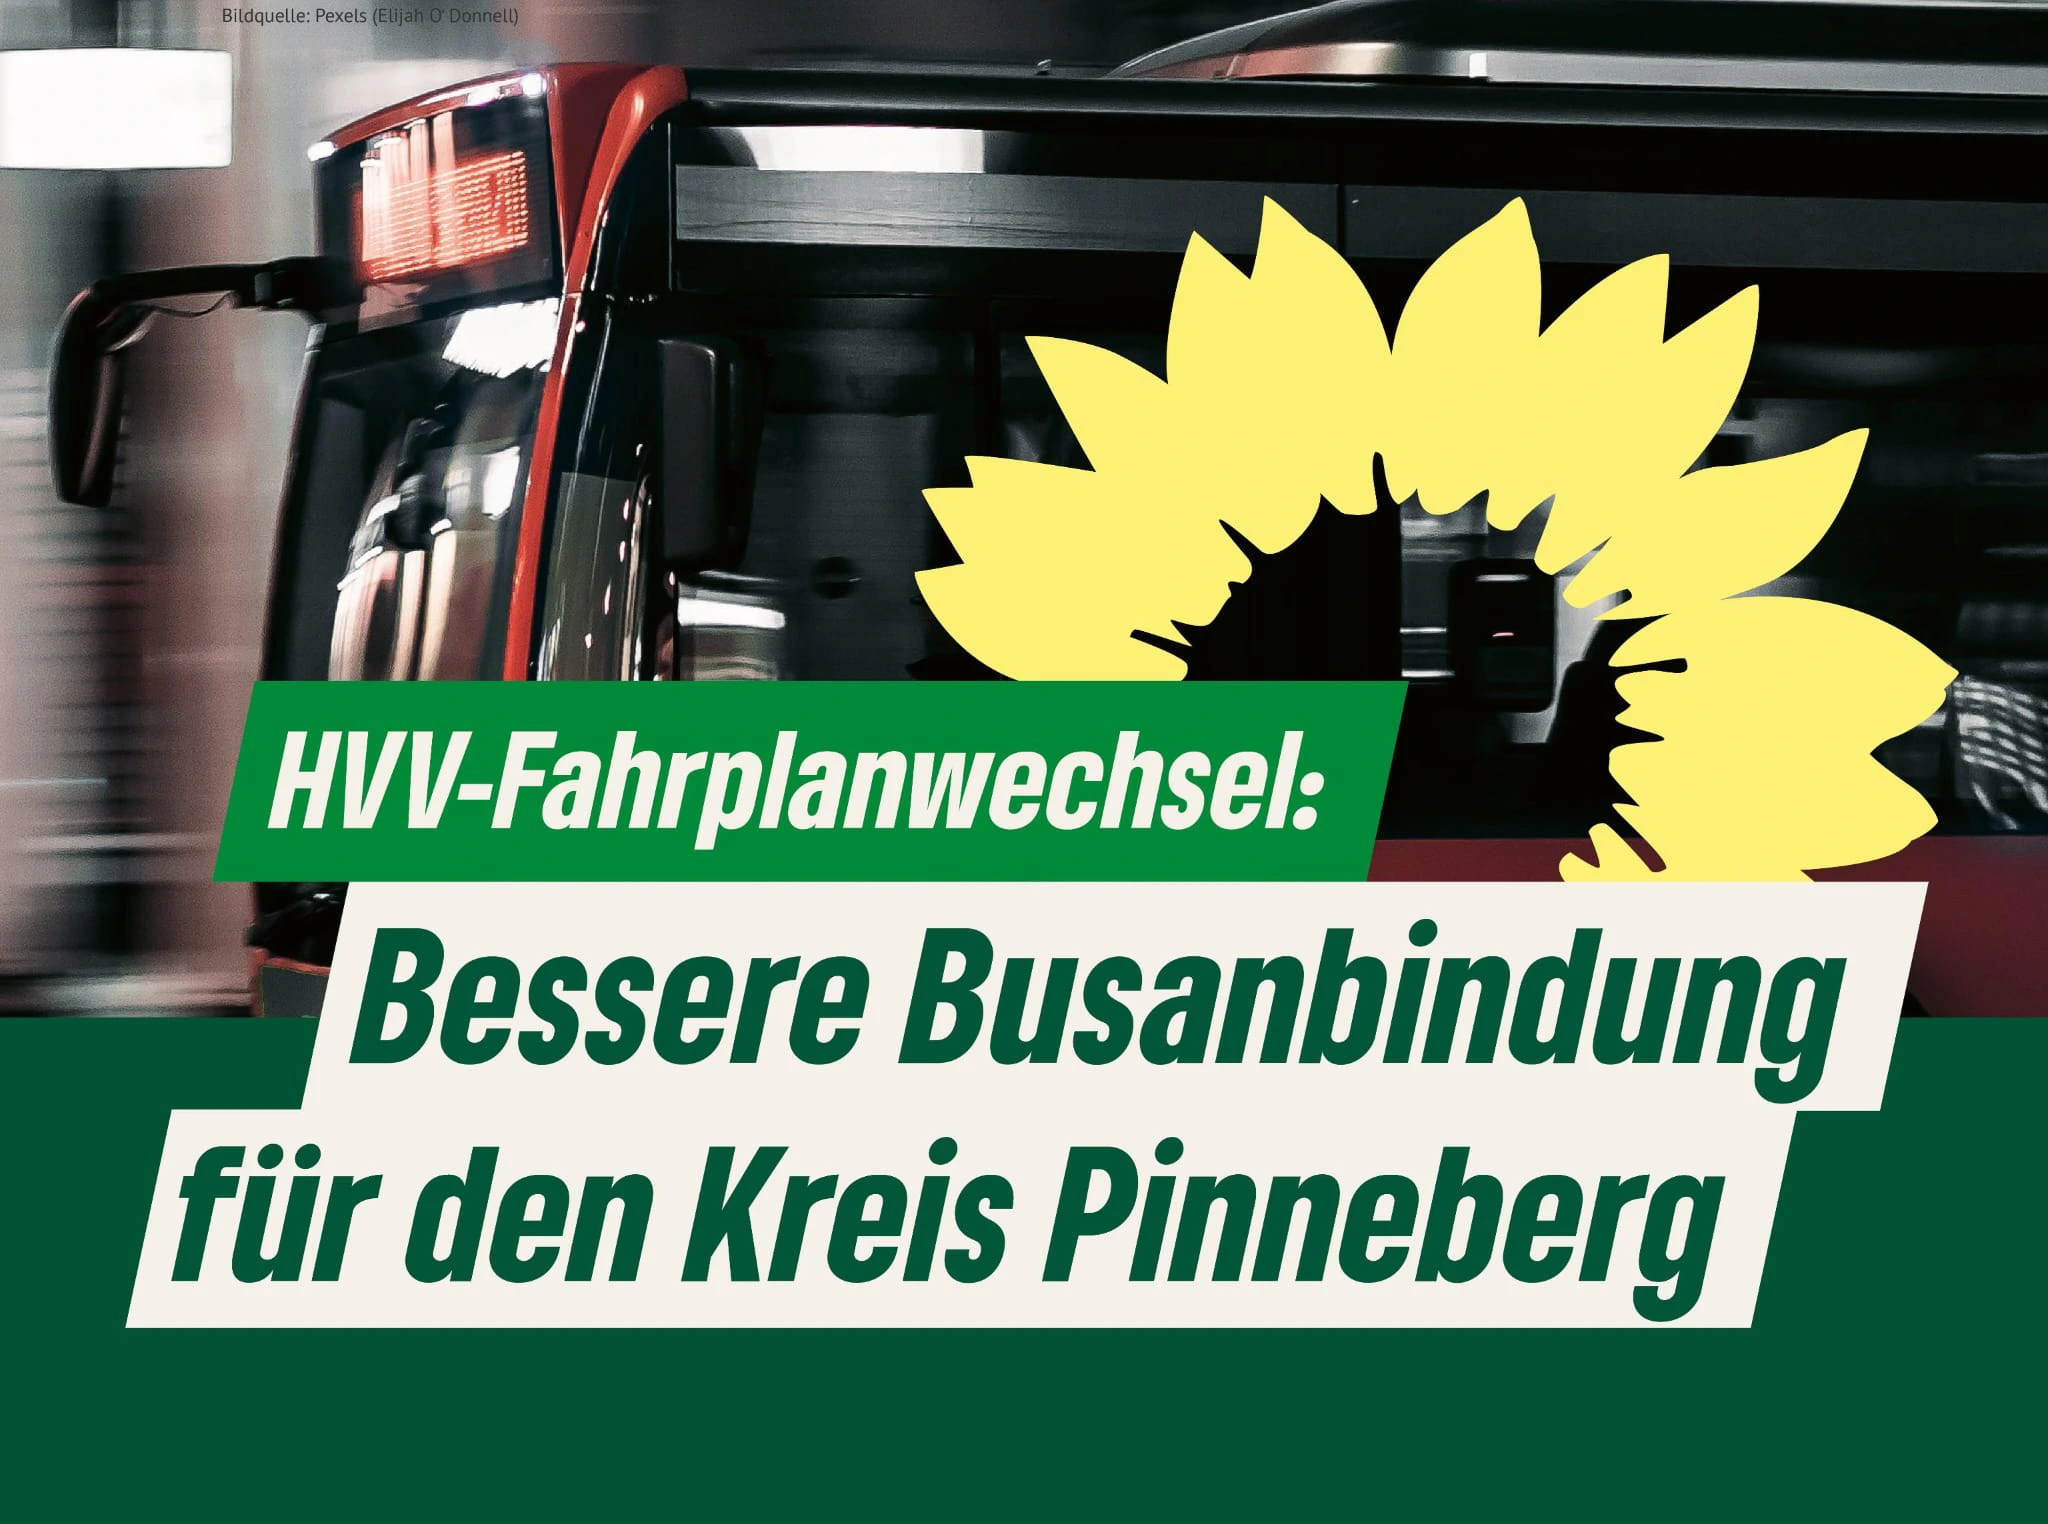 Bild von einem Bus mit dem Text: "HVV-Fahrplanwechsel: Bessere Busanbindung für den Kreis Pinneberg", daneben die Sonnenblume der GRÜNEN.